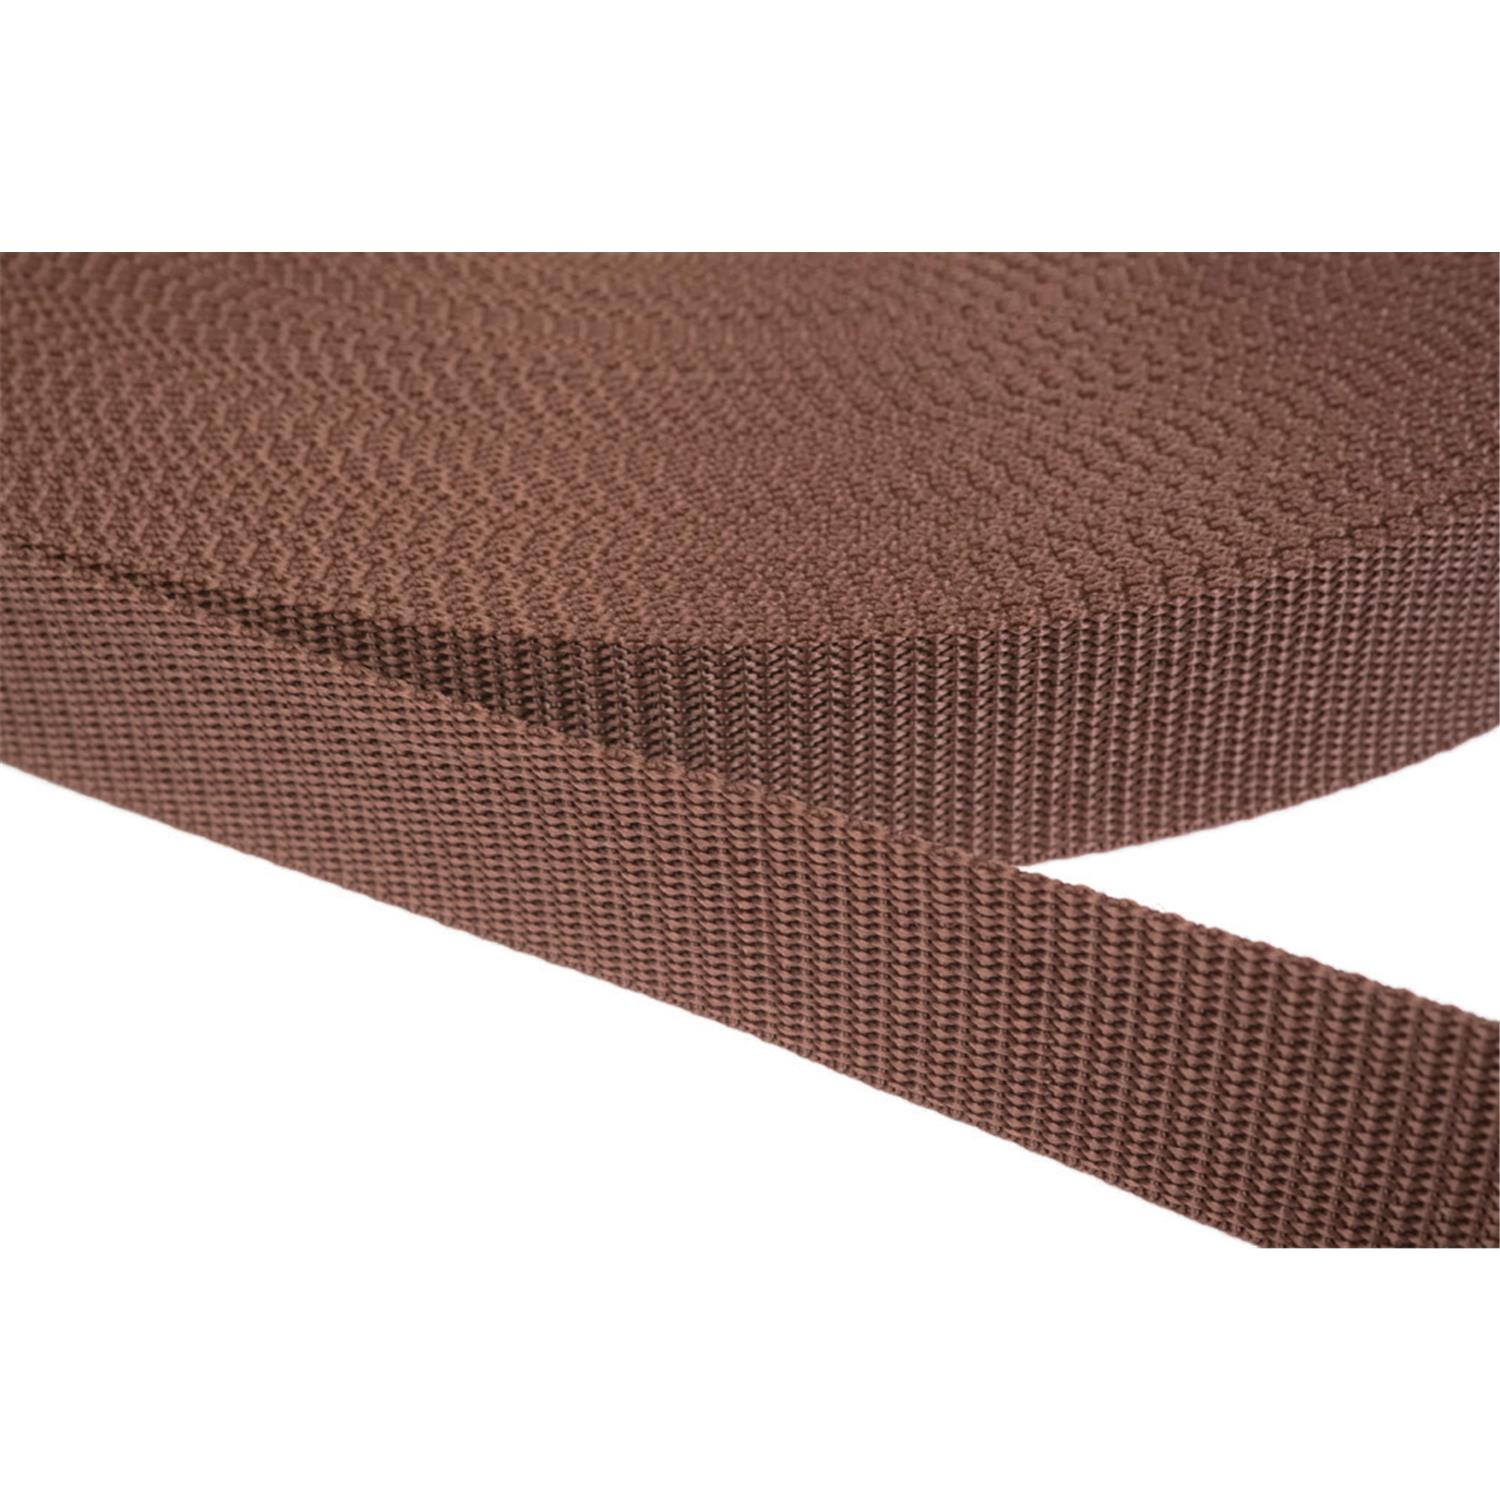 Gurtband 20mm breit aus Polypropylen in 41 Farben 07 - braun 50 Meter